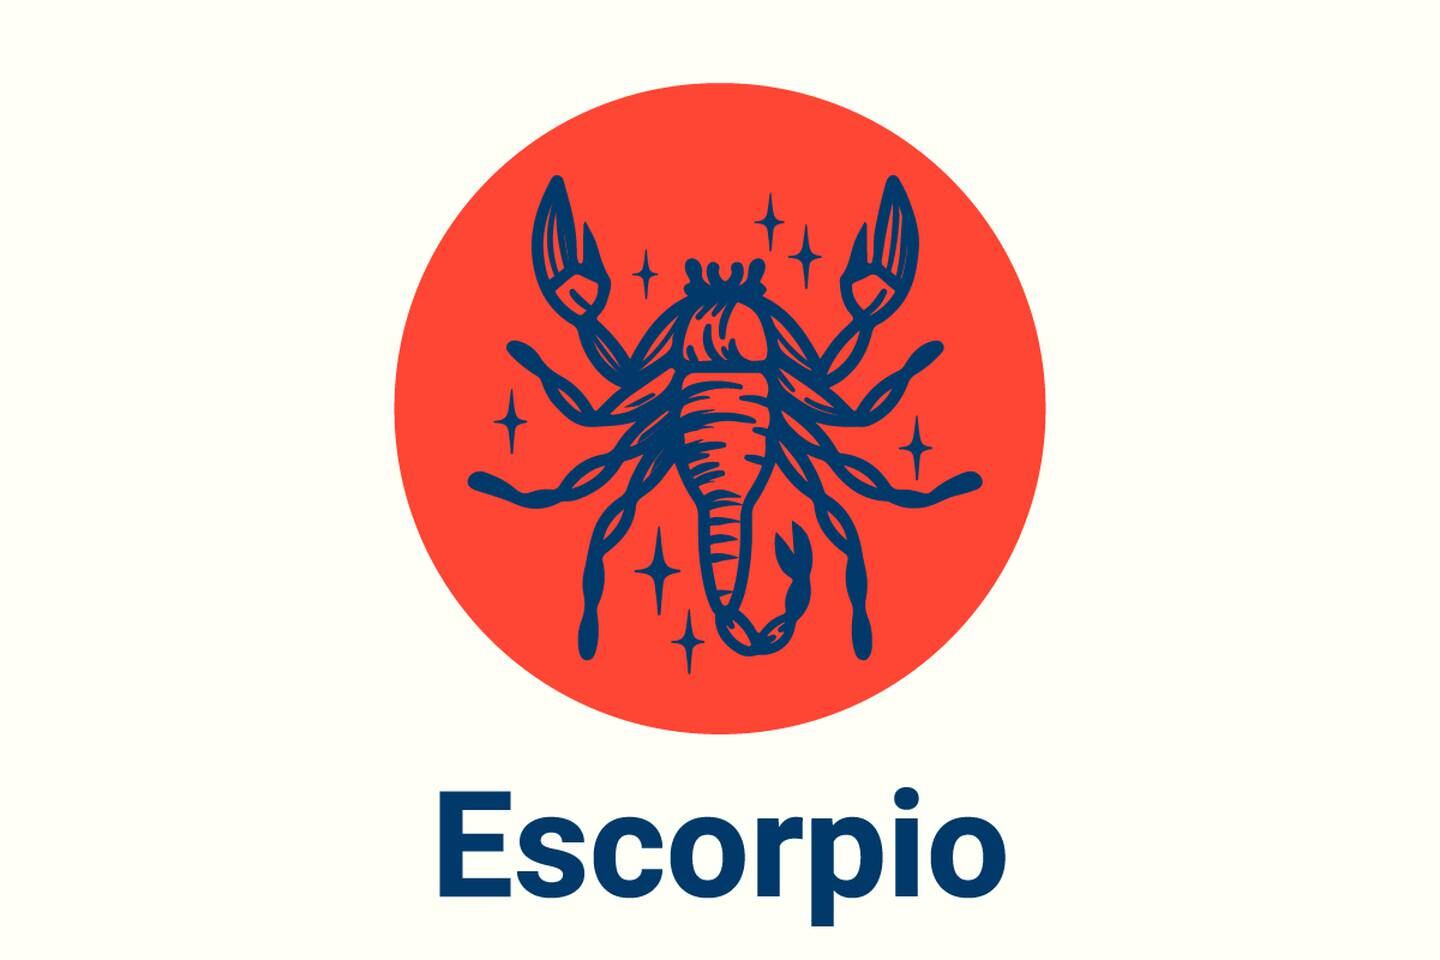 Imagen con el símbolo del signo zodiacal Escorpio.